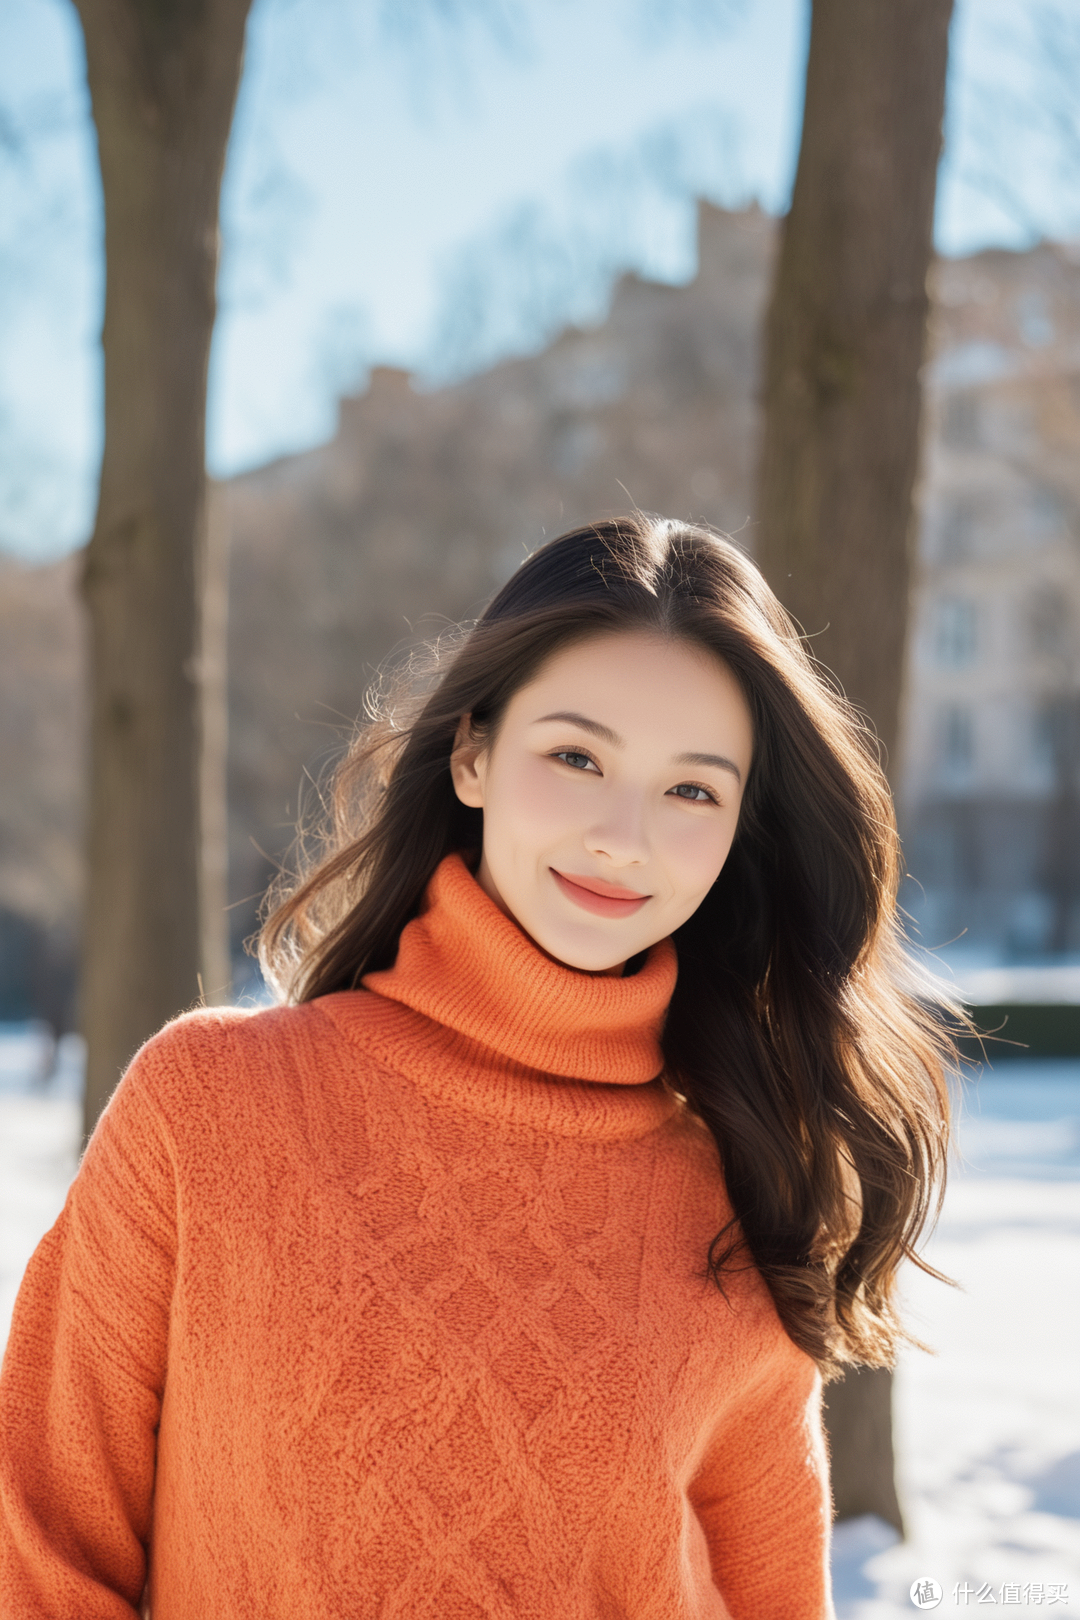 阳光下的暖意 — 橙色毛衣，冬日里的时尚抉择